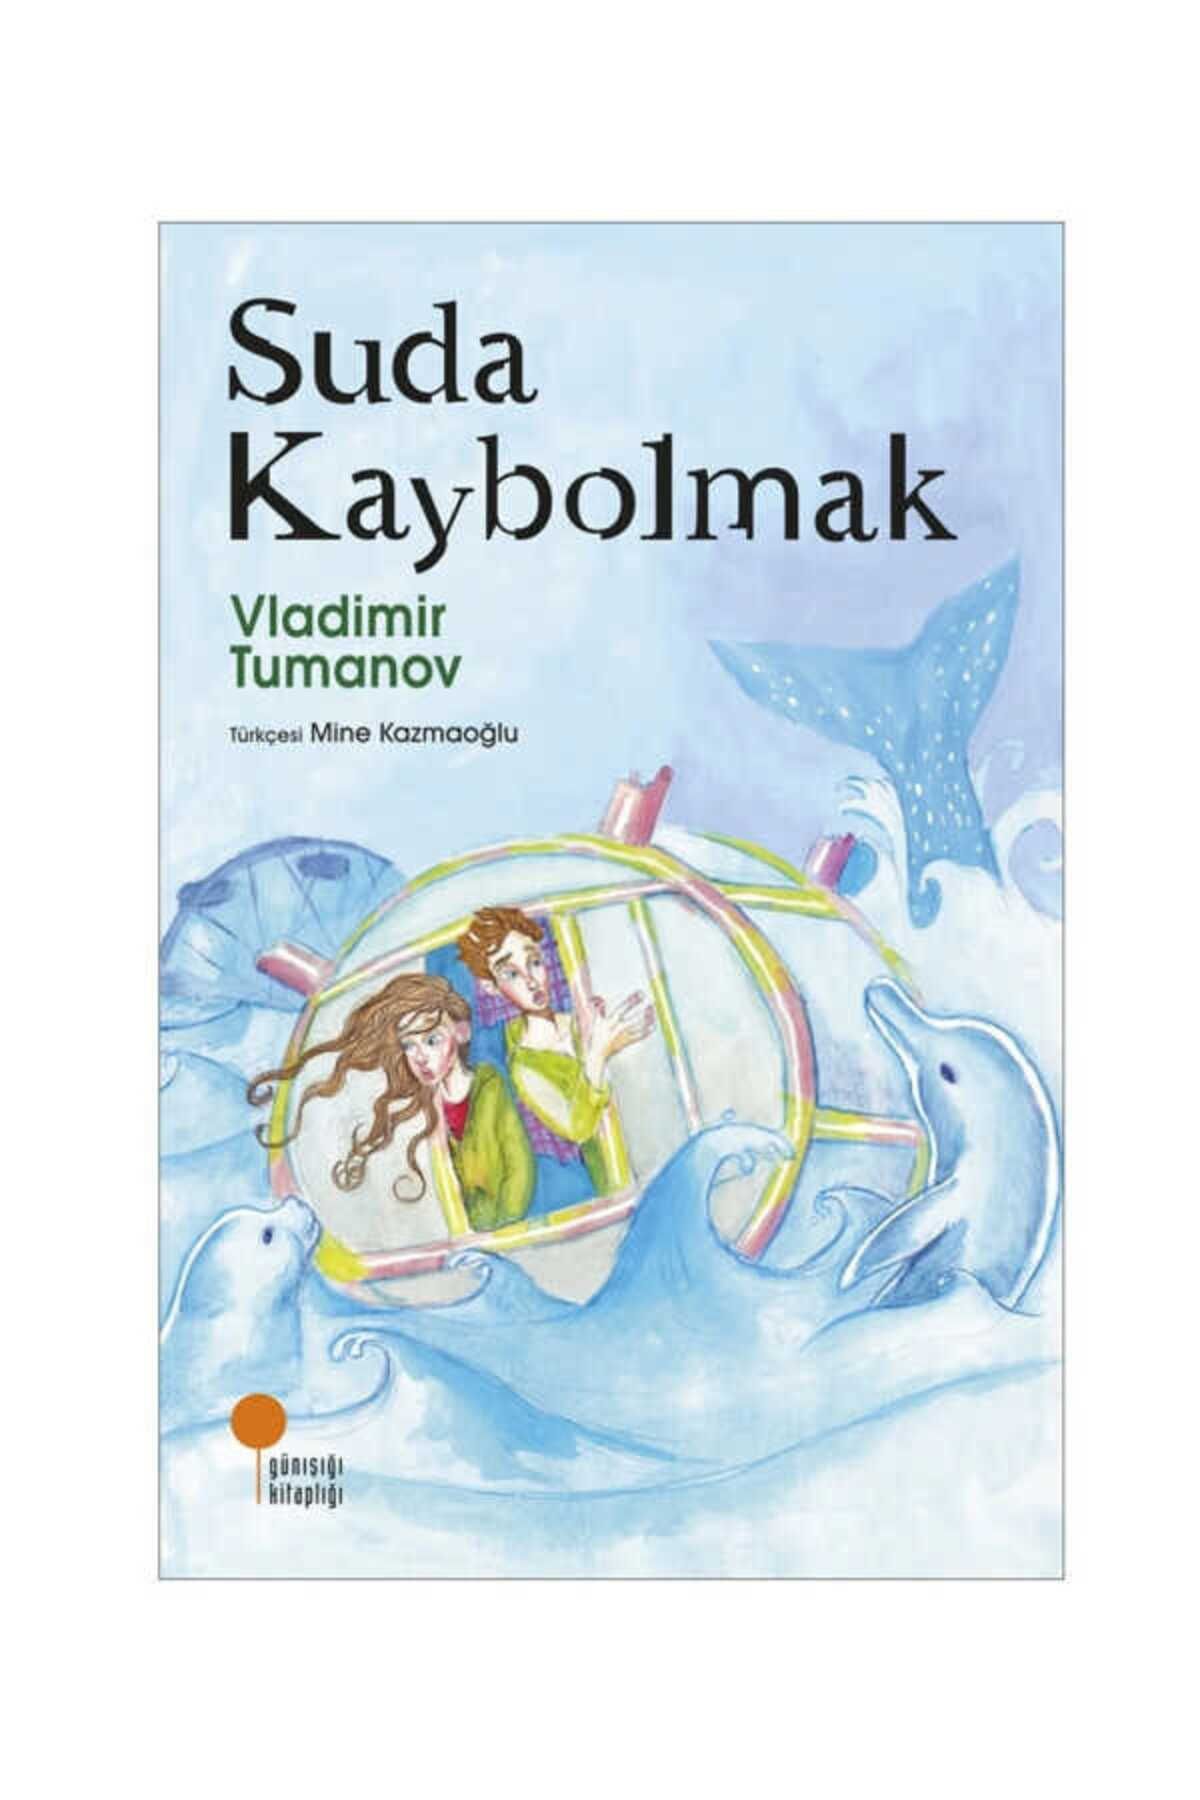 Günışığı Kitaplığı Suda Kaybolmak - Vladimir Tumanov 9786057797520